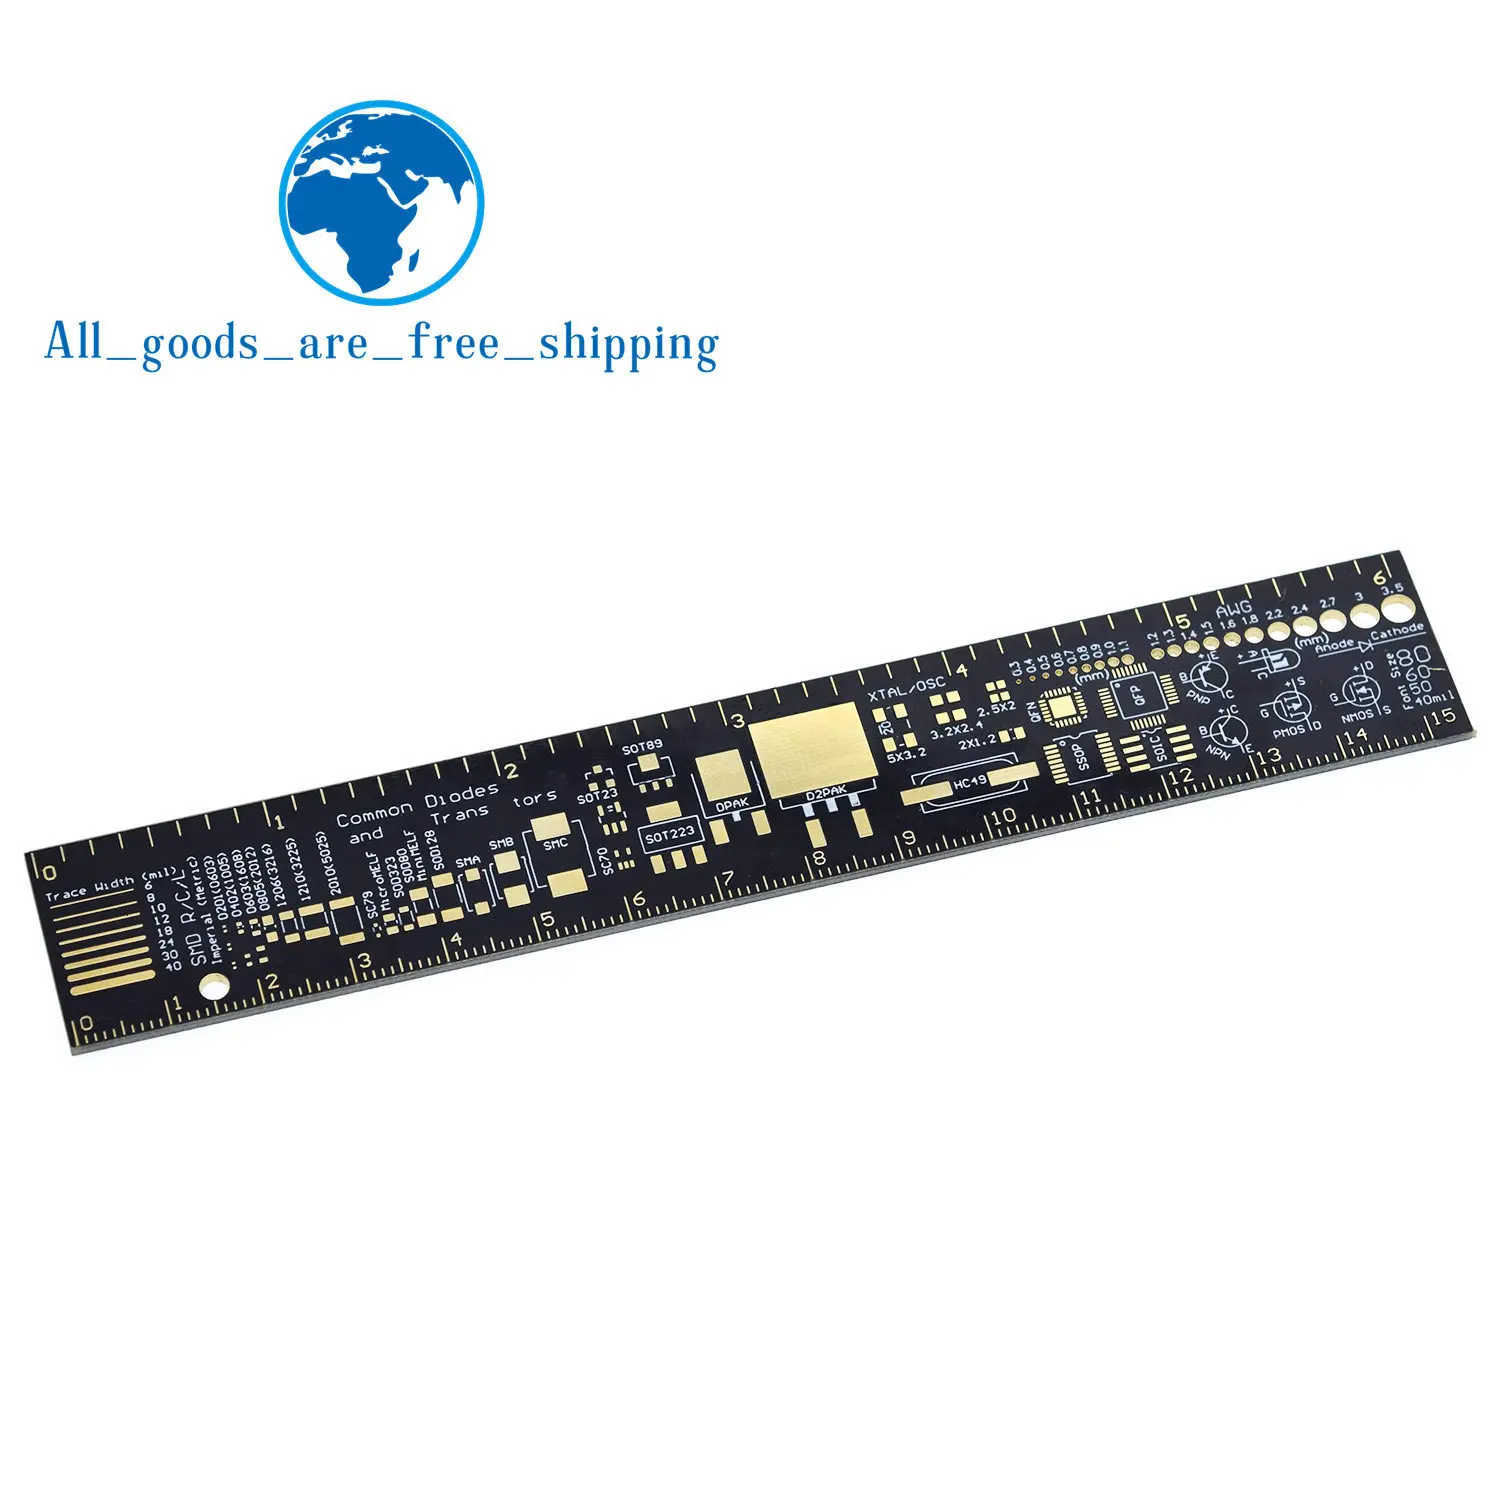 TZT PCB линейка для электронных инженеров для гиков, производителей для фанатов Arduino, PCB линейка, PCB упаковочные блоки v2-6